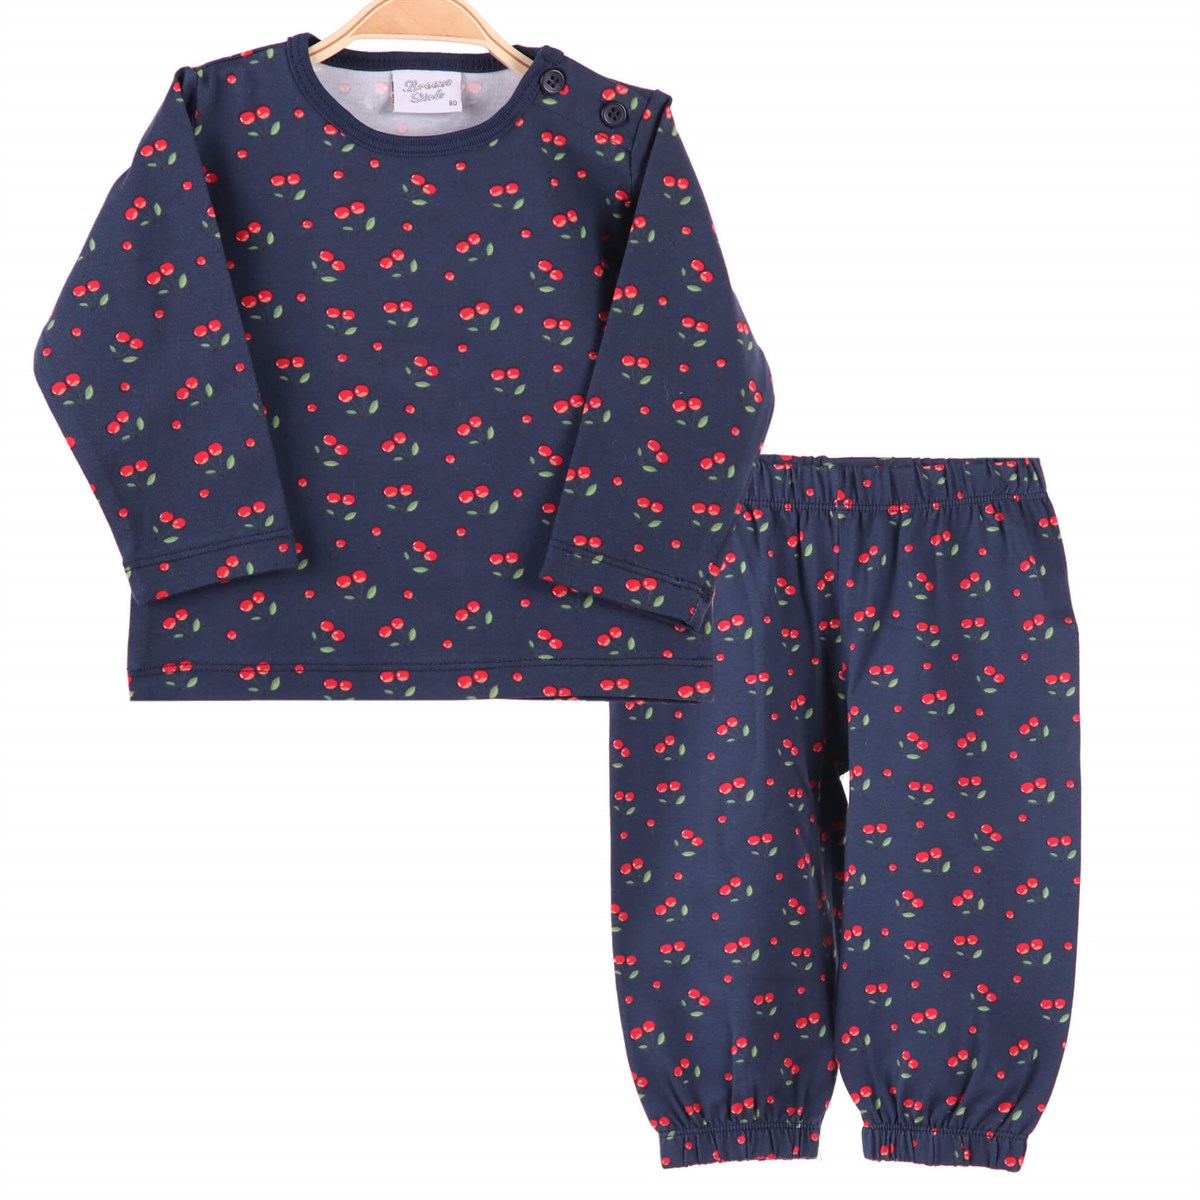 Kız Bebek Pijama Takımı | Kirazlı,Lacivert Renkli 1-4 Yaş